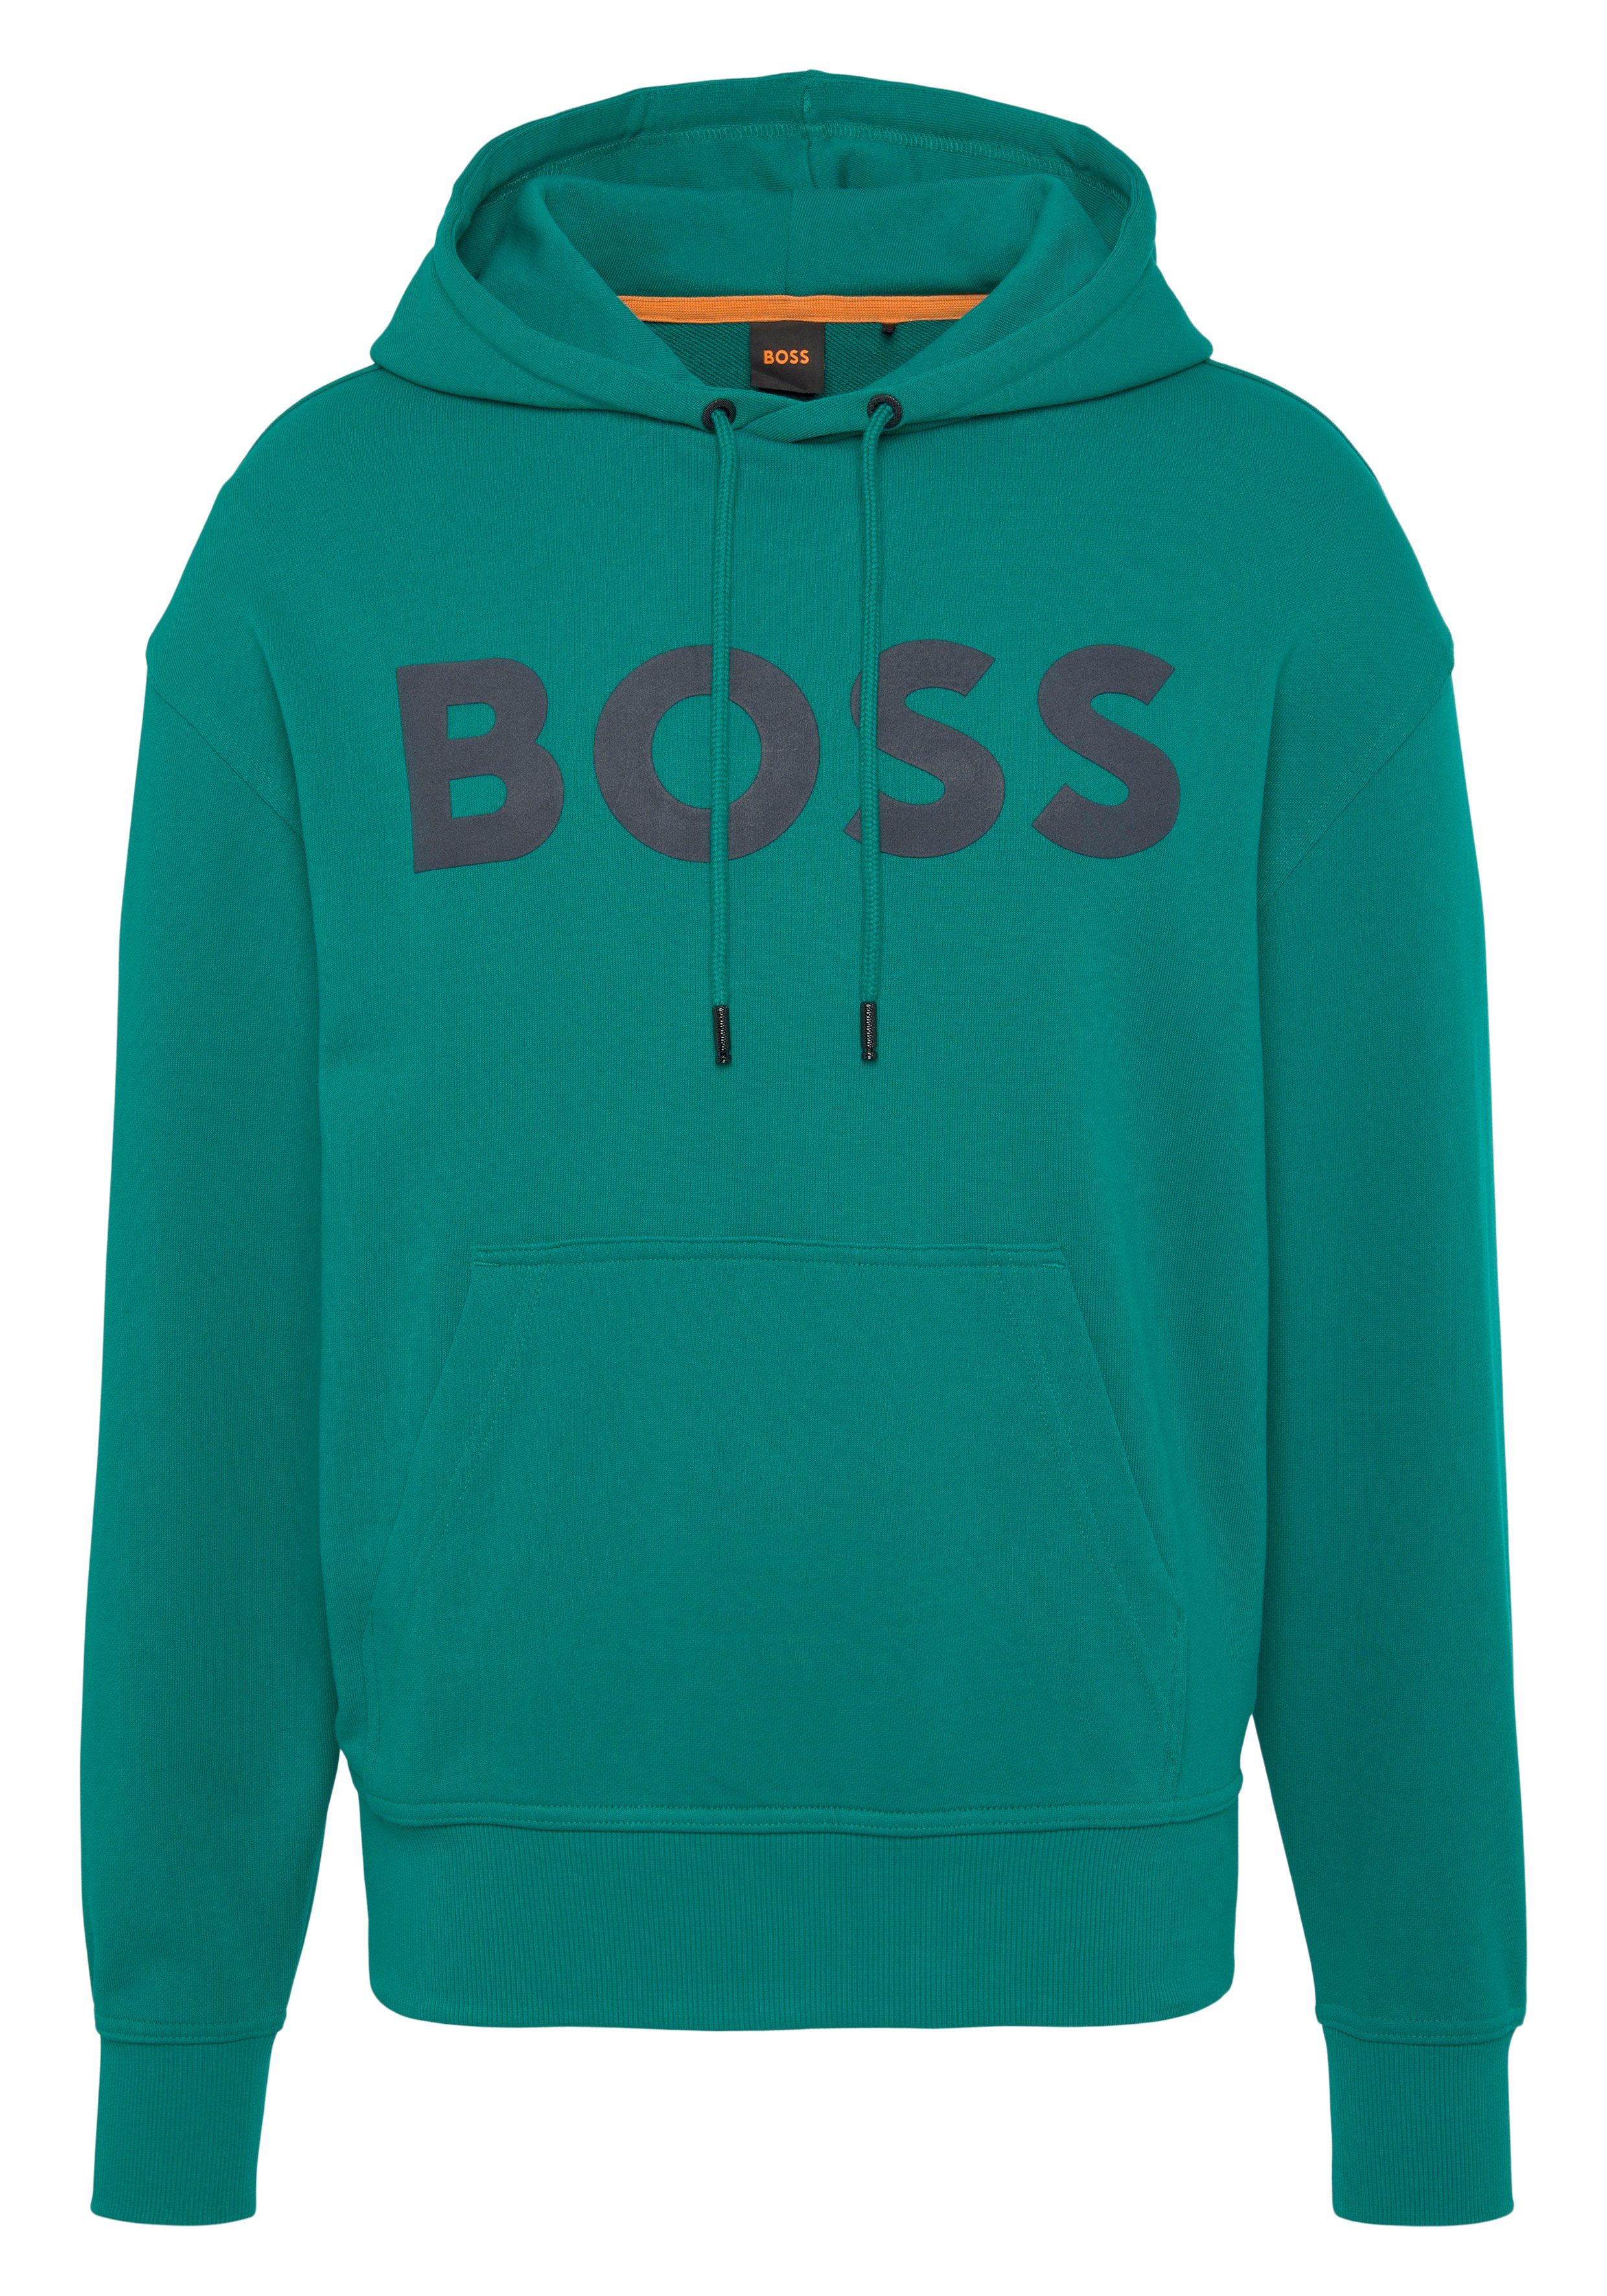 HUGO BOSS ORANGE Sweatshirt WebasicHood BOSS großem Print Brust mit Green Dark auf der